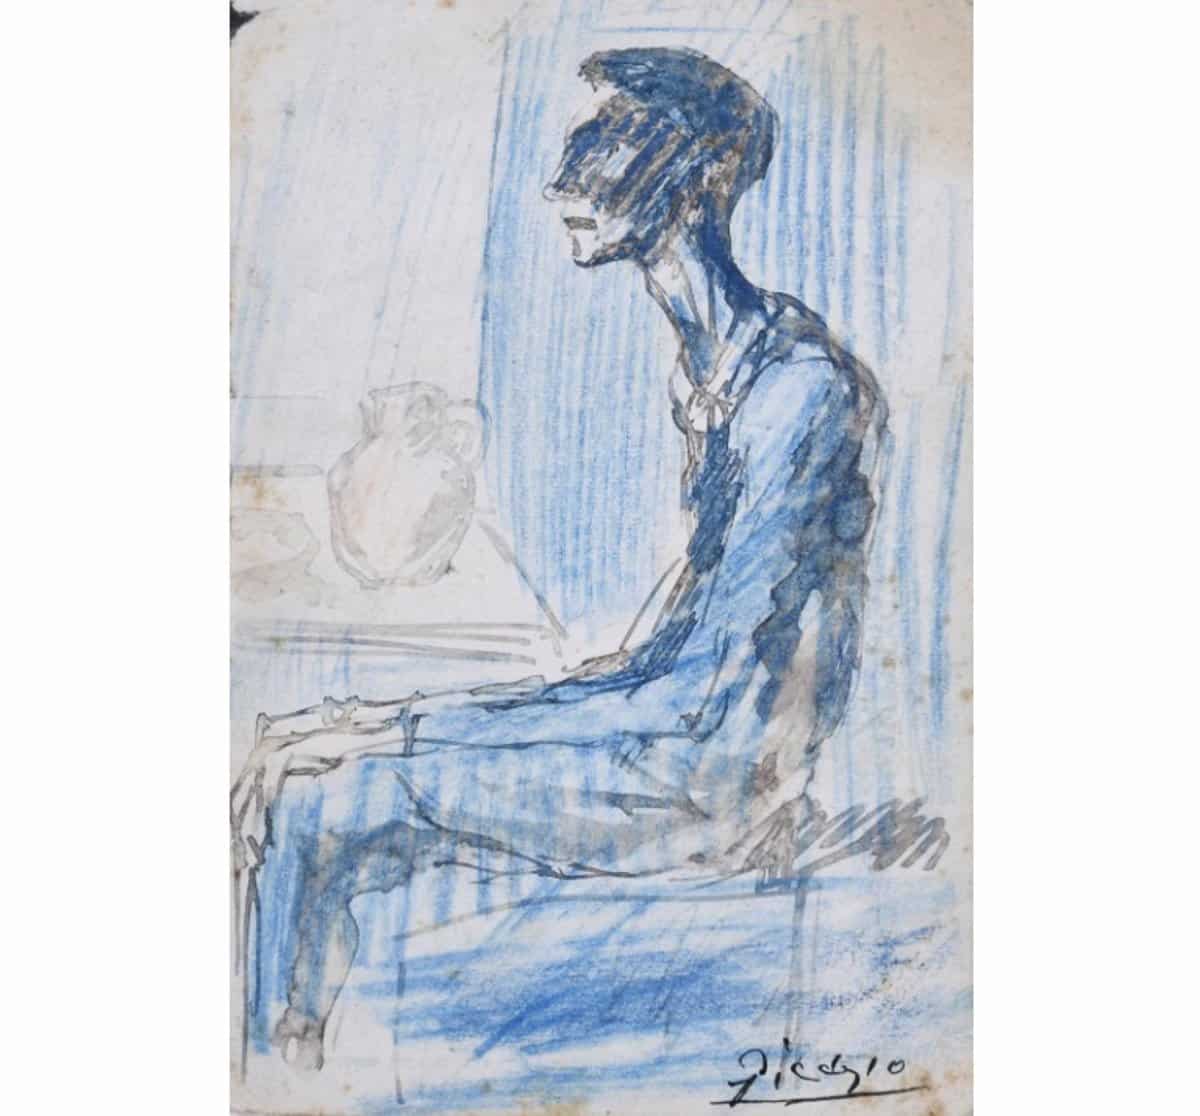 Un dibujo de Picasso desaparecido hace casi 100 años sale a subasta en España